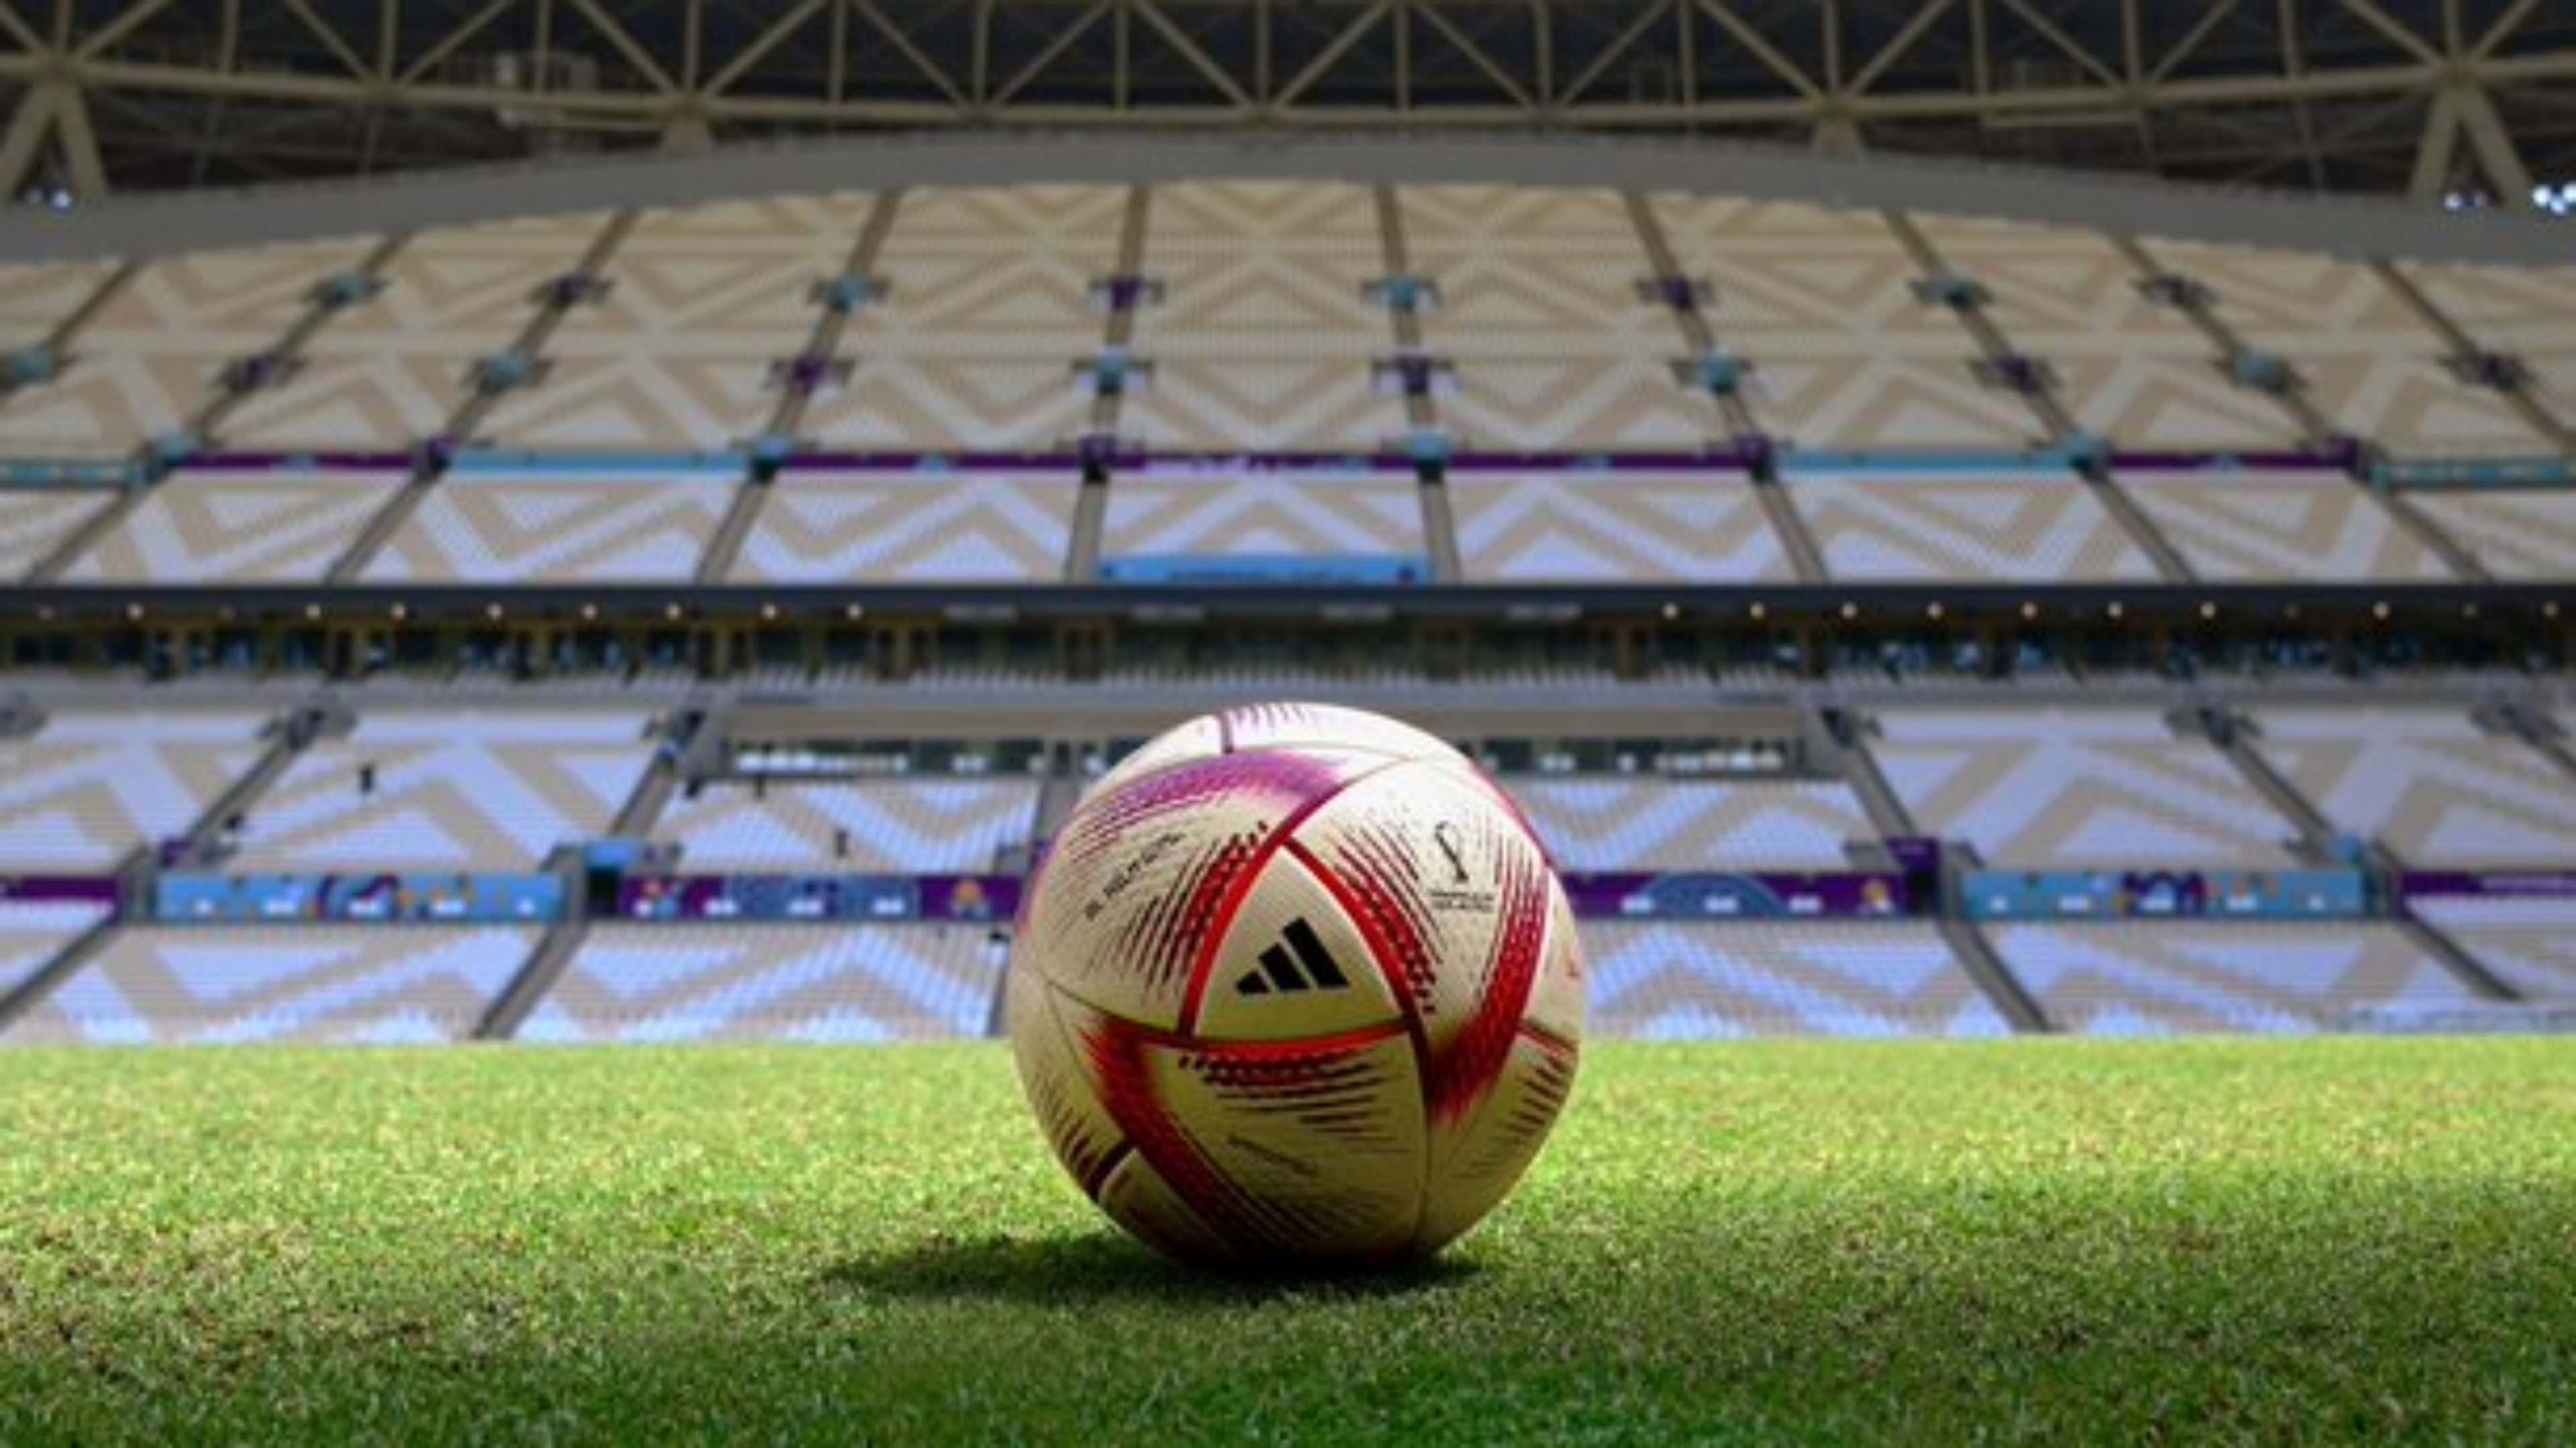 Fifa divulga nova bola que será usada nas próximas fases da Copa do Mundo